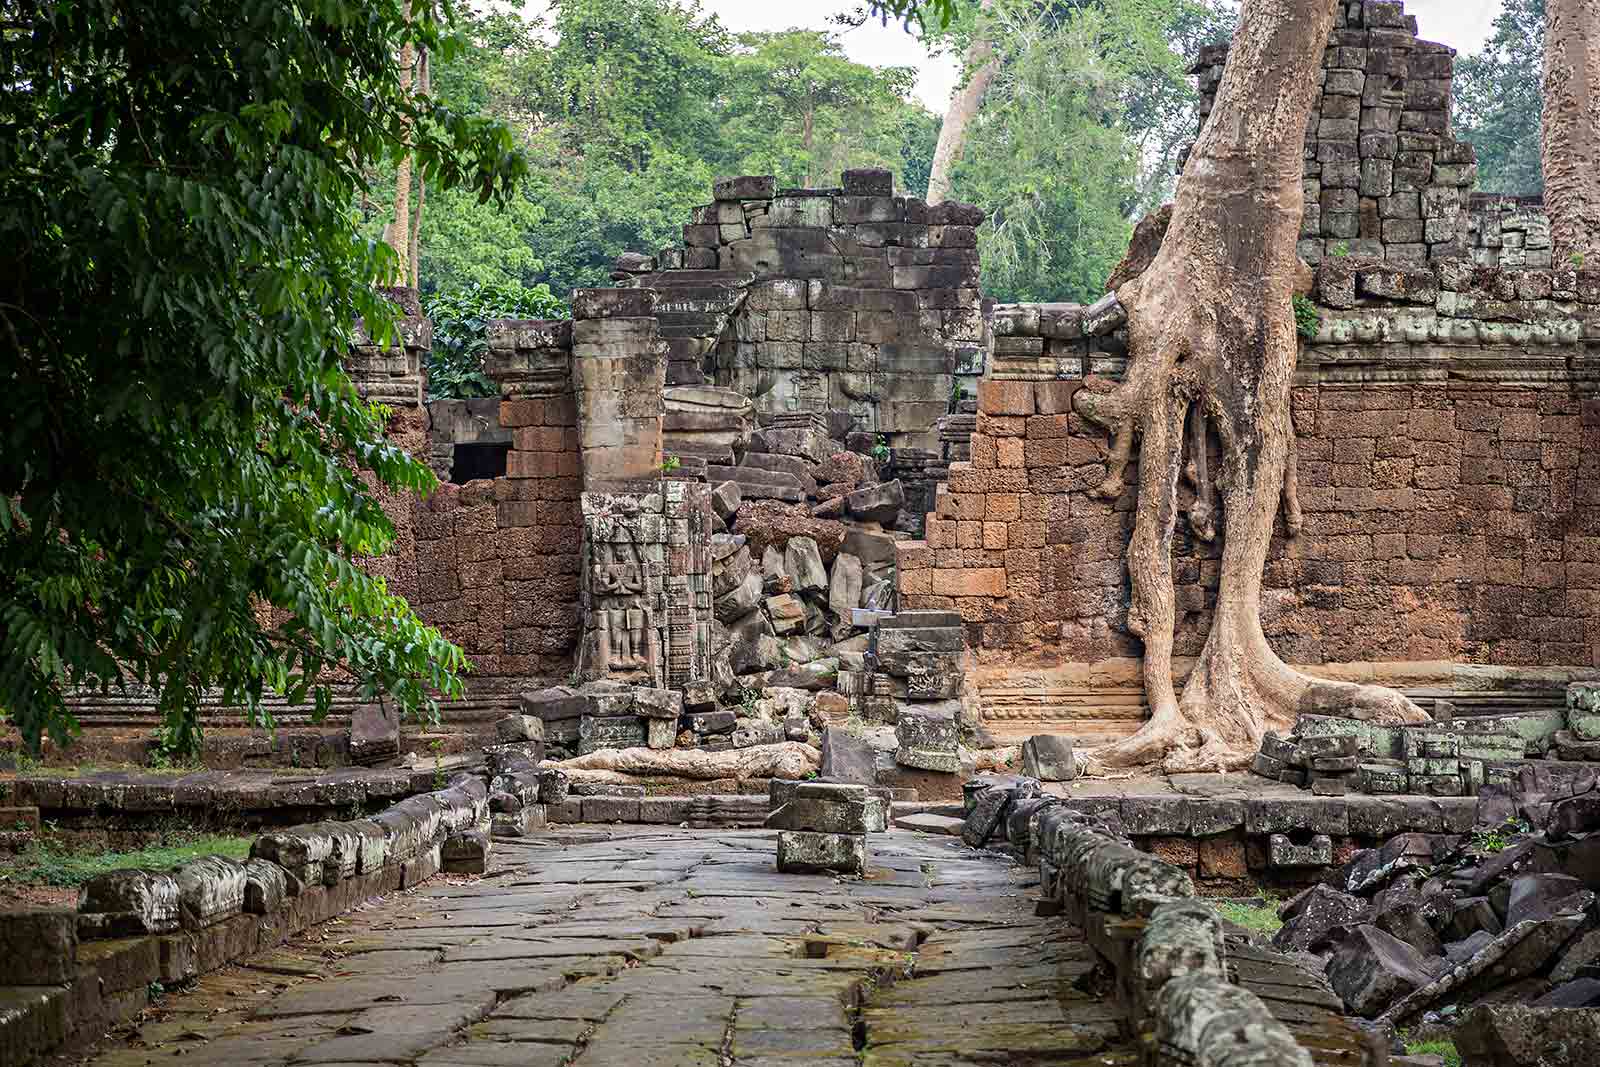 Preah Khan temple in Angkor Wat, Cambodia.